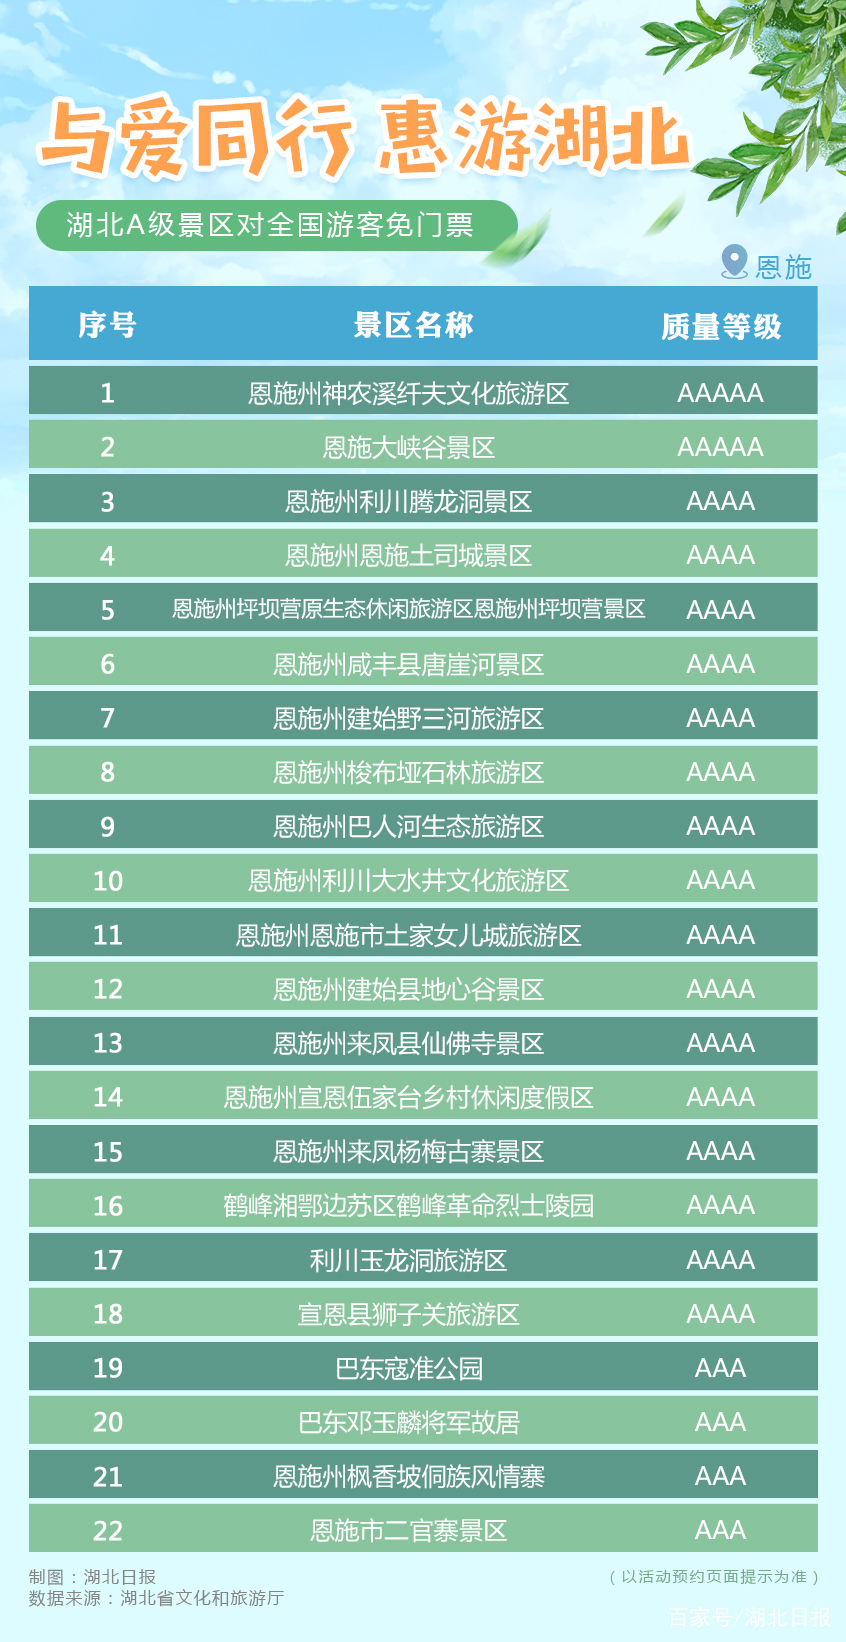 2020年惠游湖北【恩施】A级景区免费名单​一览表